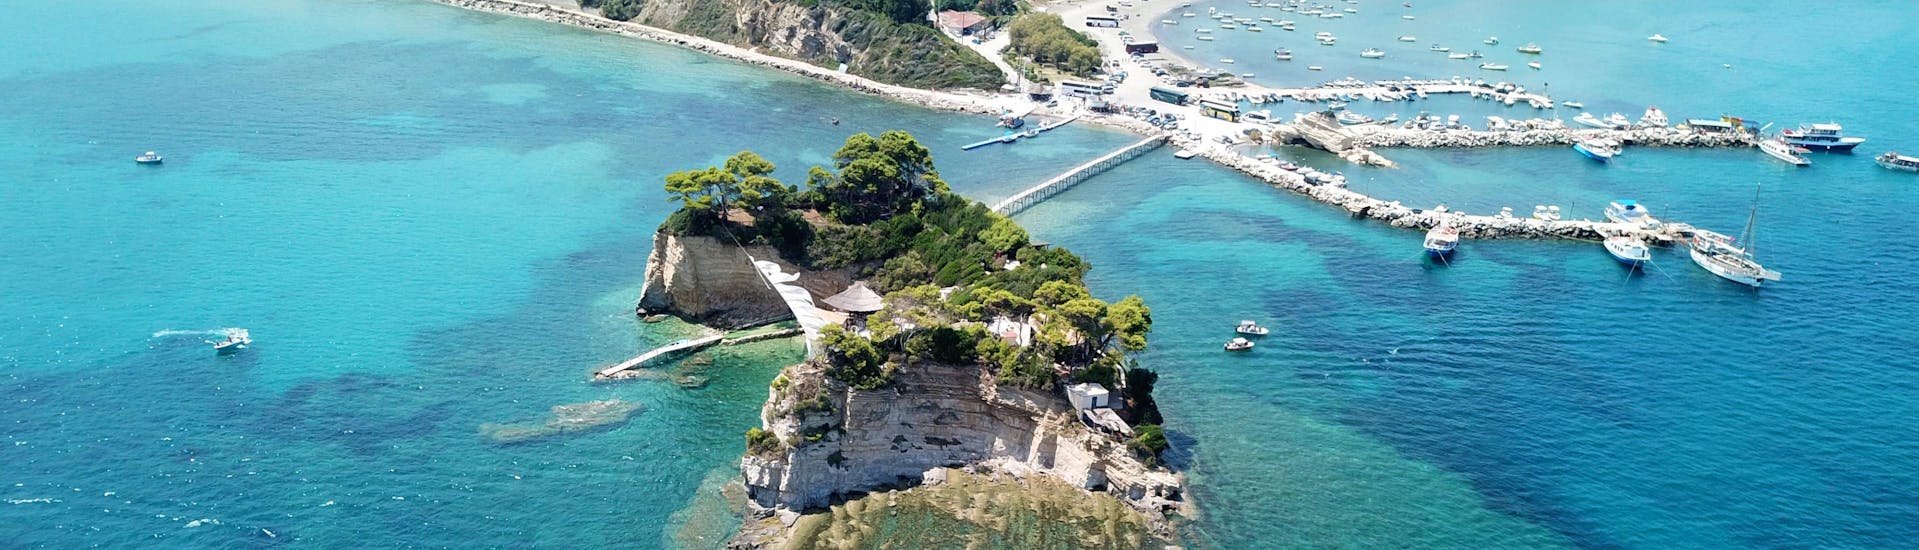 Imagen de la bahía de Laganas, Zakynthos, y el puente de madera que conecta la isla.